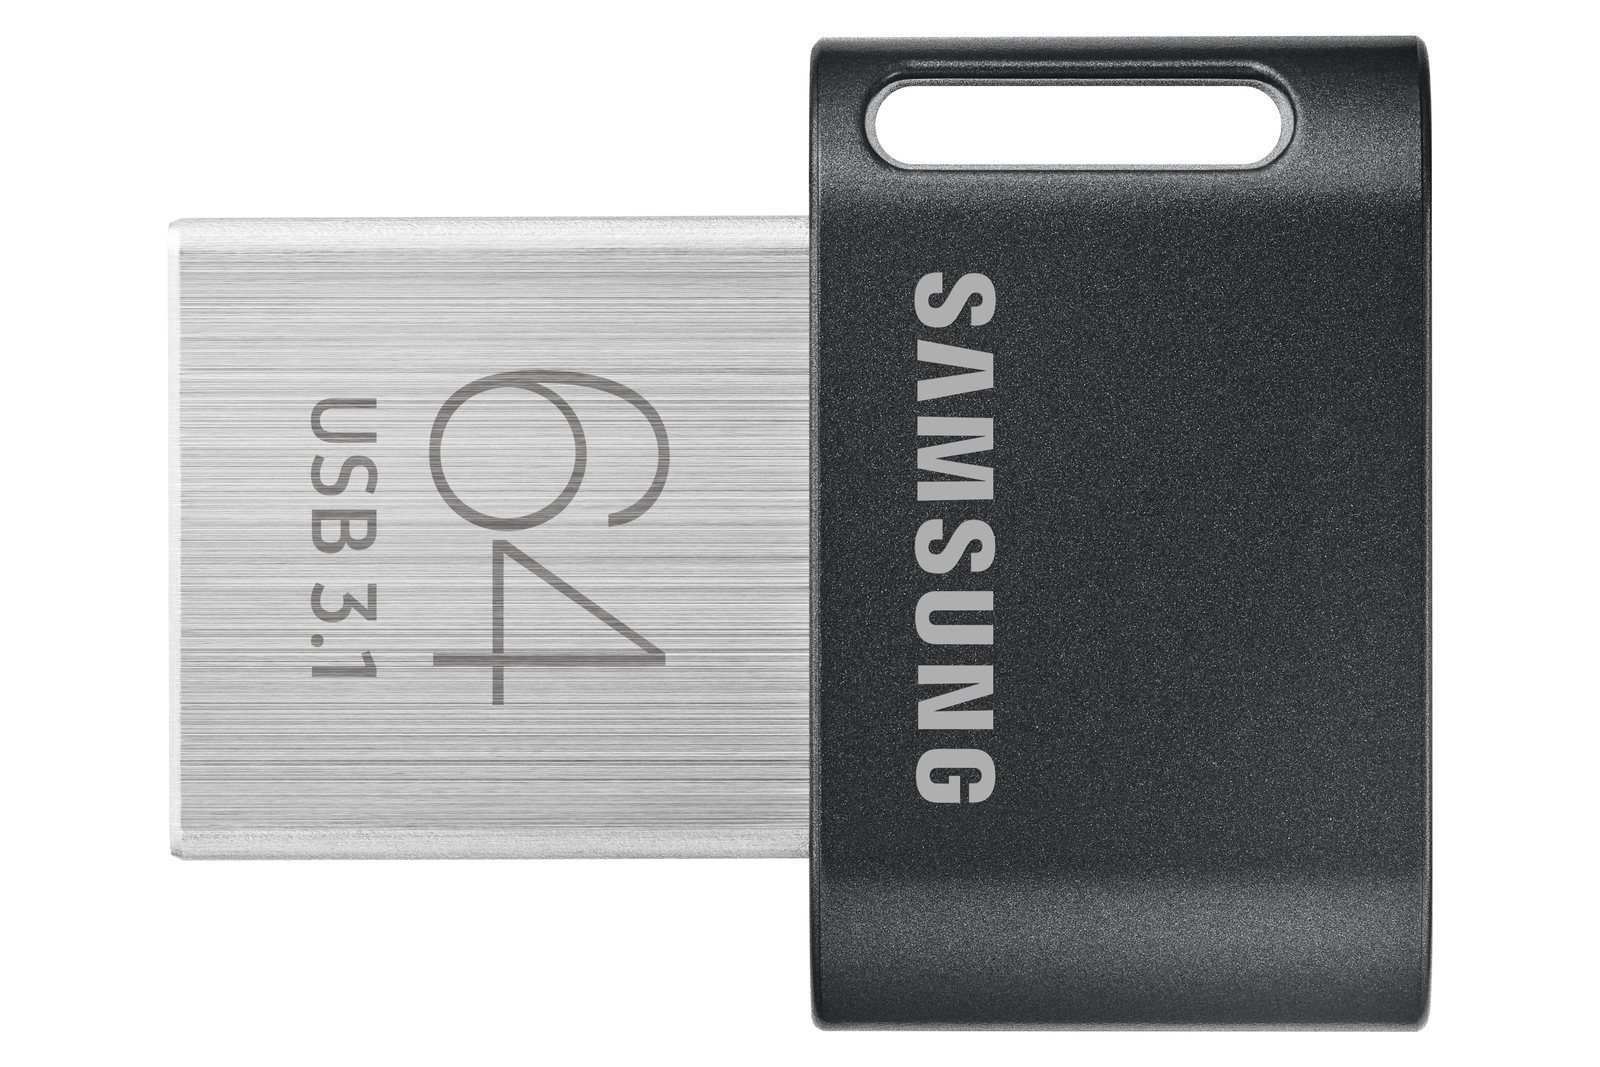 Samsung USB 3.1 64 GB Fit Plus USB 3.1 Gen 1 200MB/s USB Flash Drive New ct 